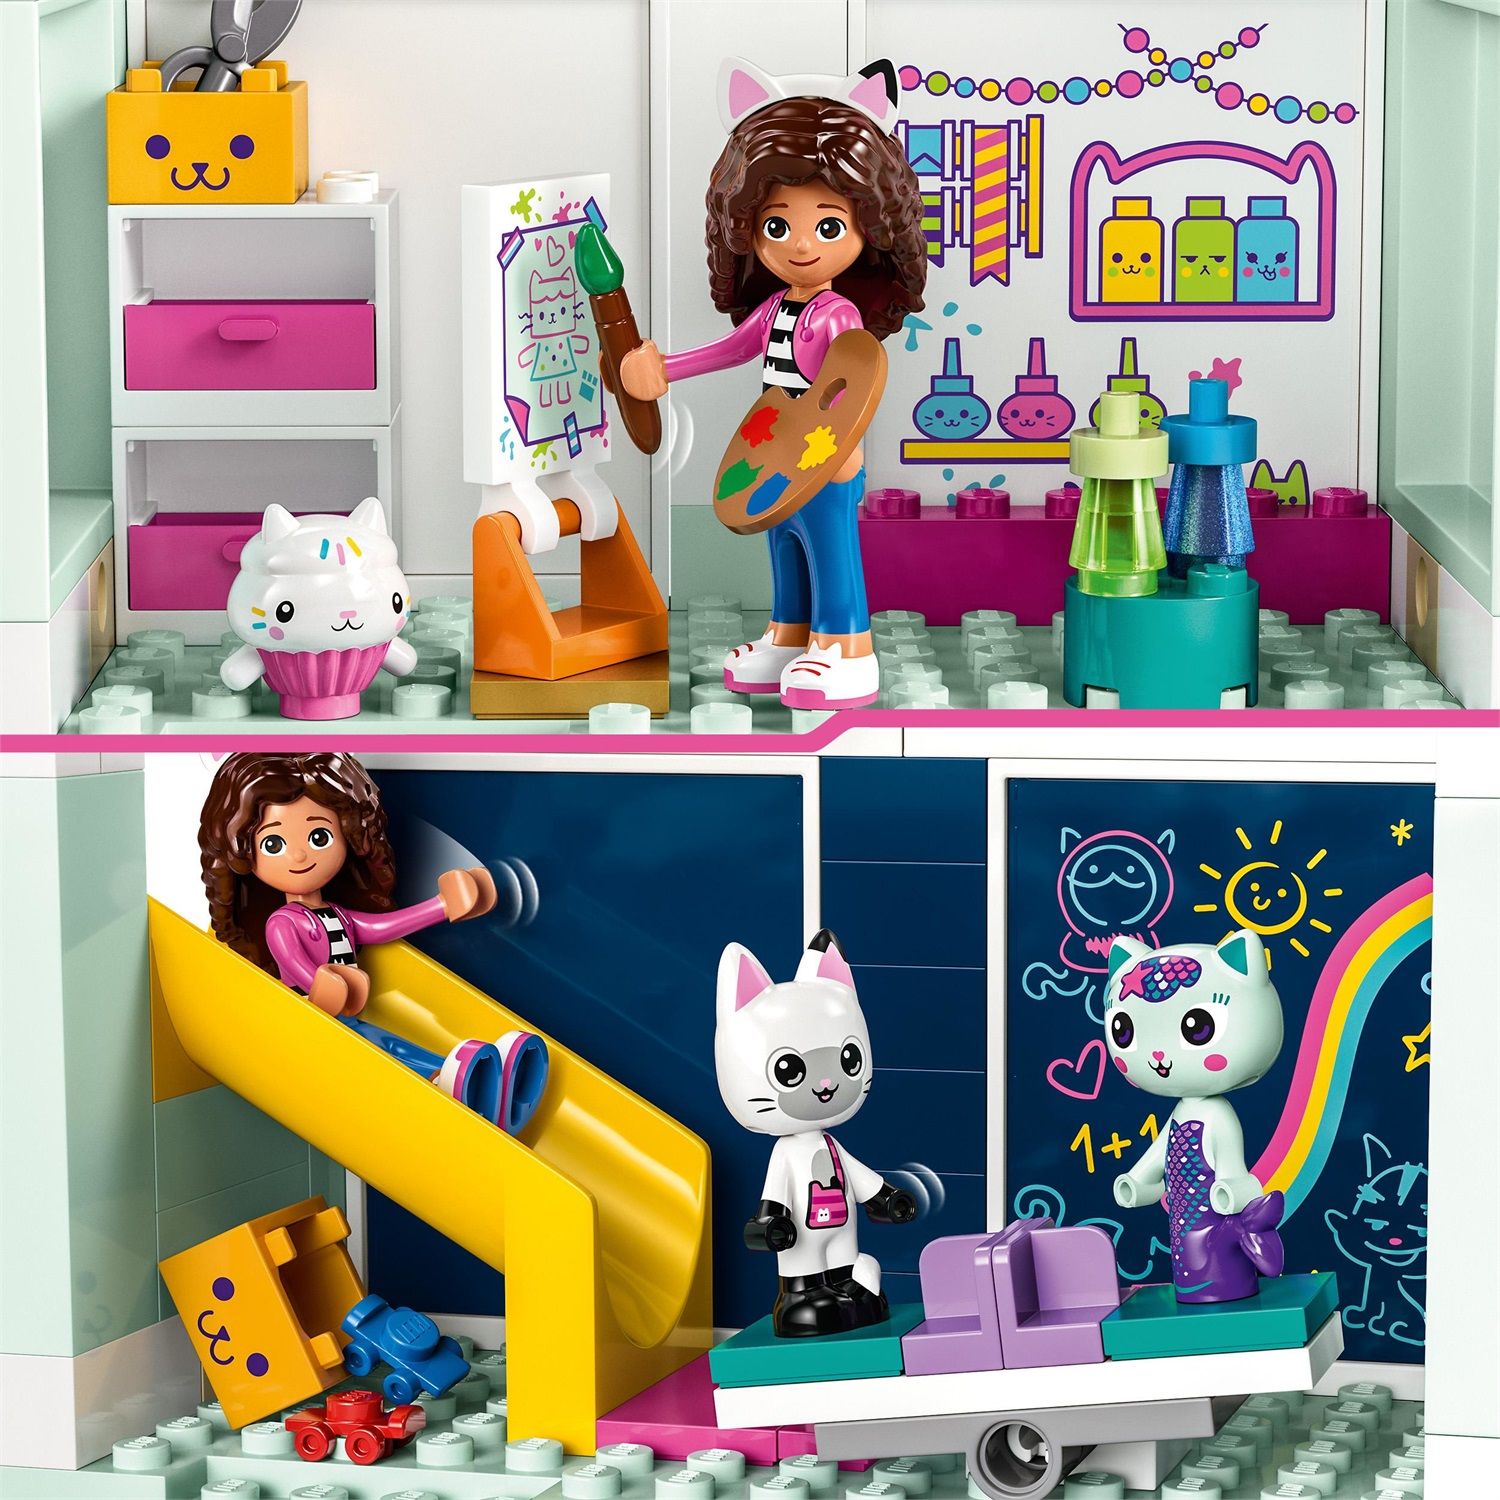 LEGO 10788 La casa delle bambole di Gabby - 10788